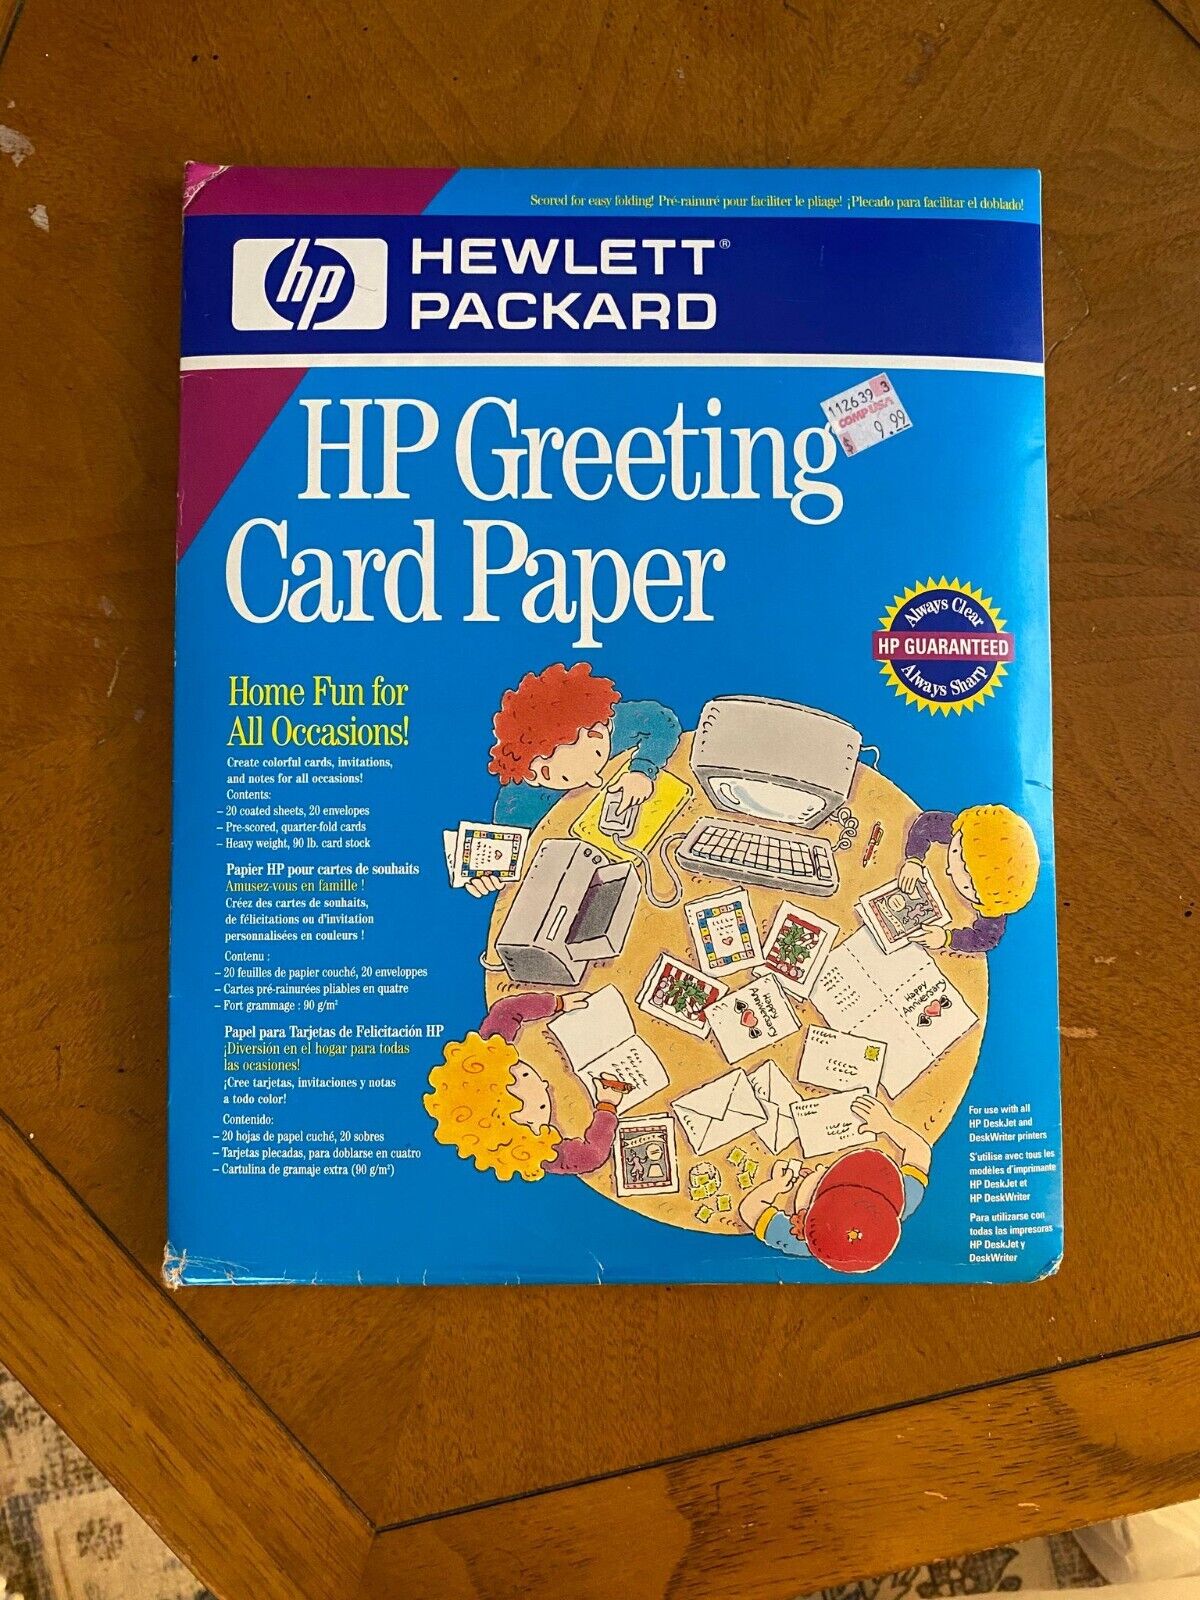 Vintage 2000s Y2K HP Hewlett Packard Gift Card Printer Paper Kit